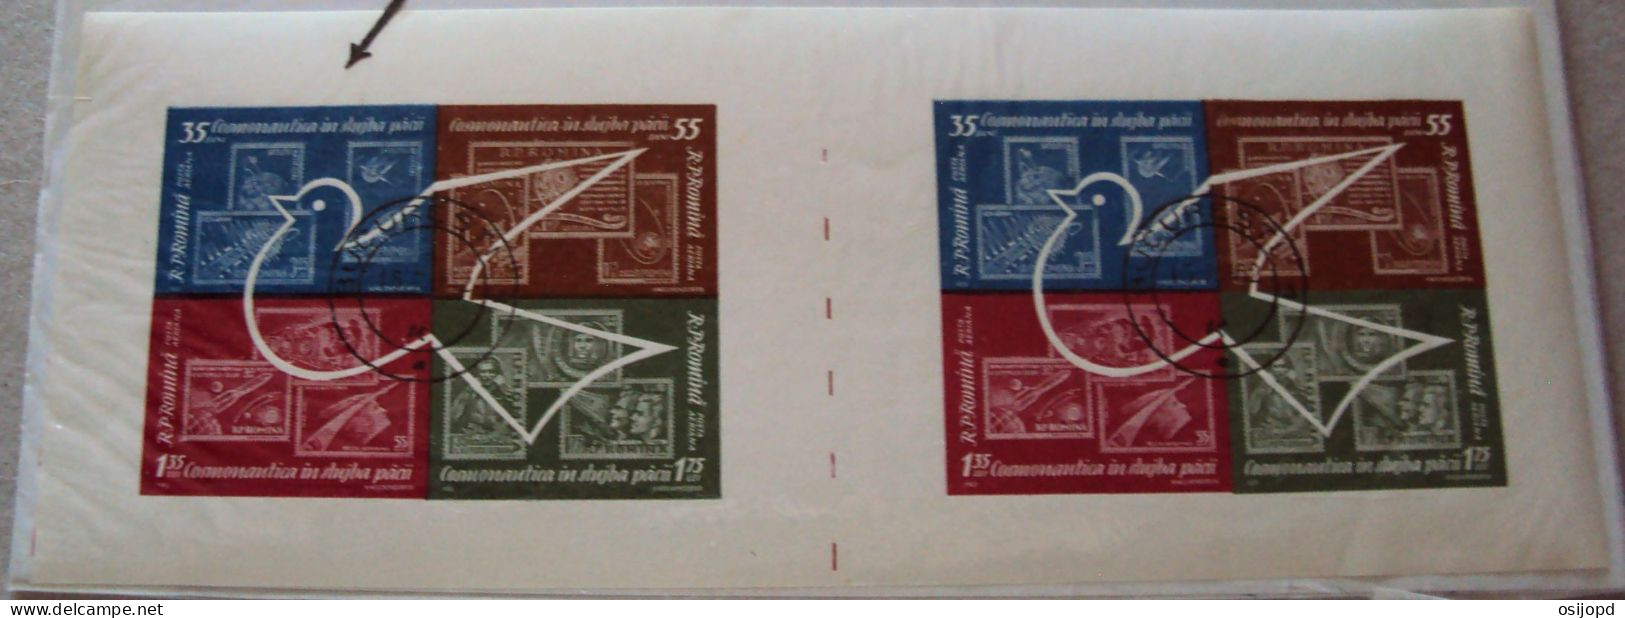 Rumänien, 1962, Bl 53, Kosmos, Blockpaar Ungetrennt,  Abart Buchstabe I Fehlt  In Artificial, Block Links, Gestempelt - Abarten Und Kuriositäten